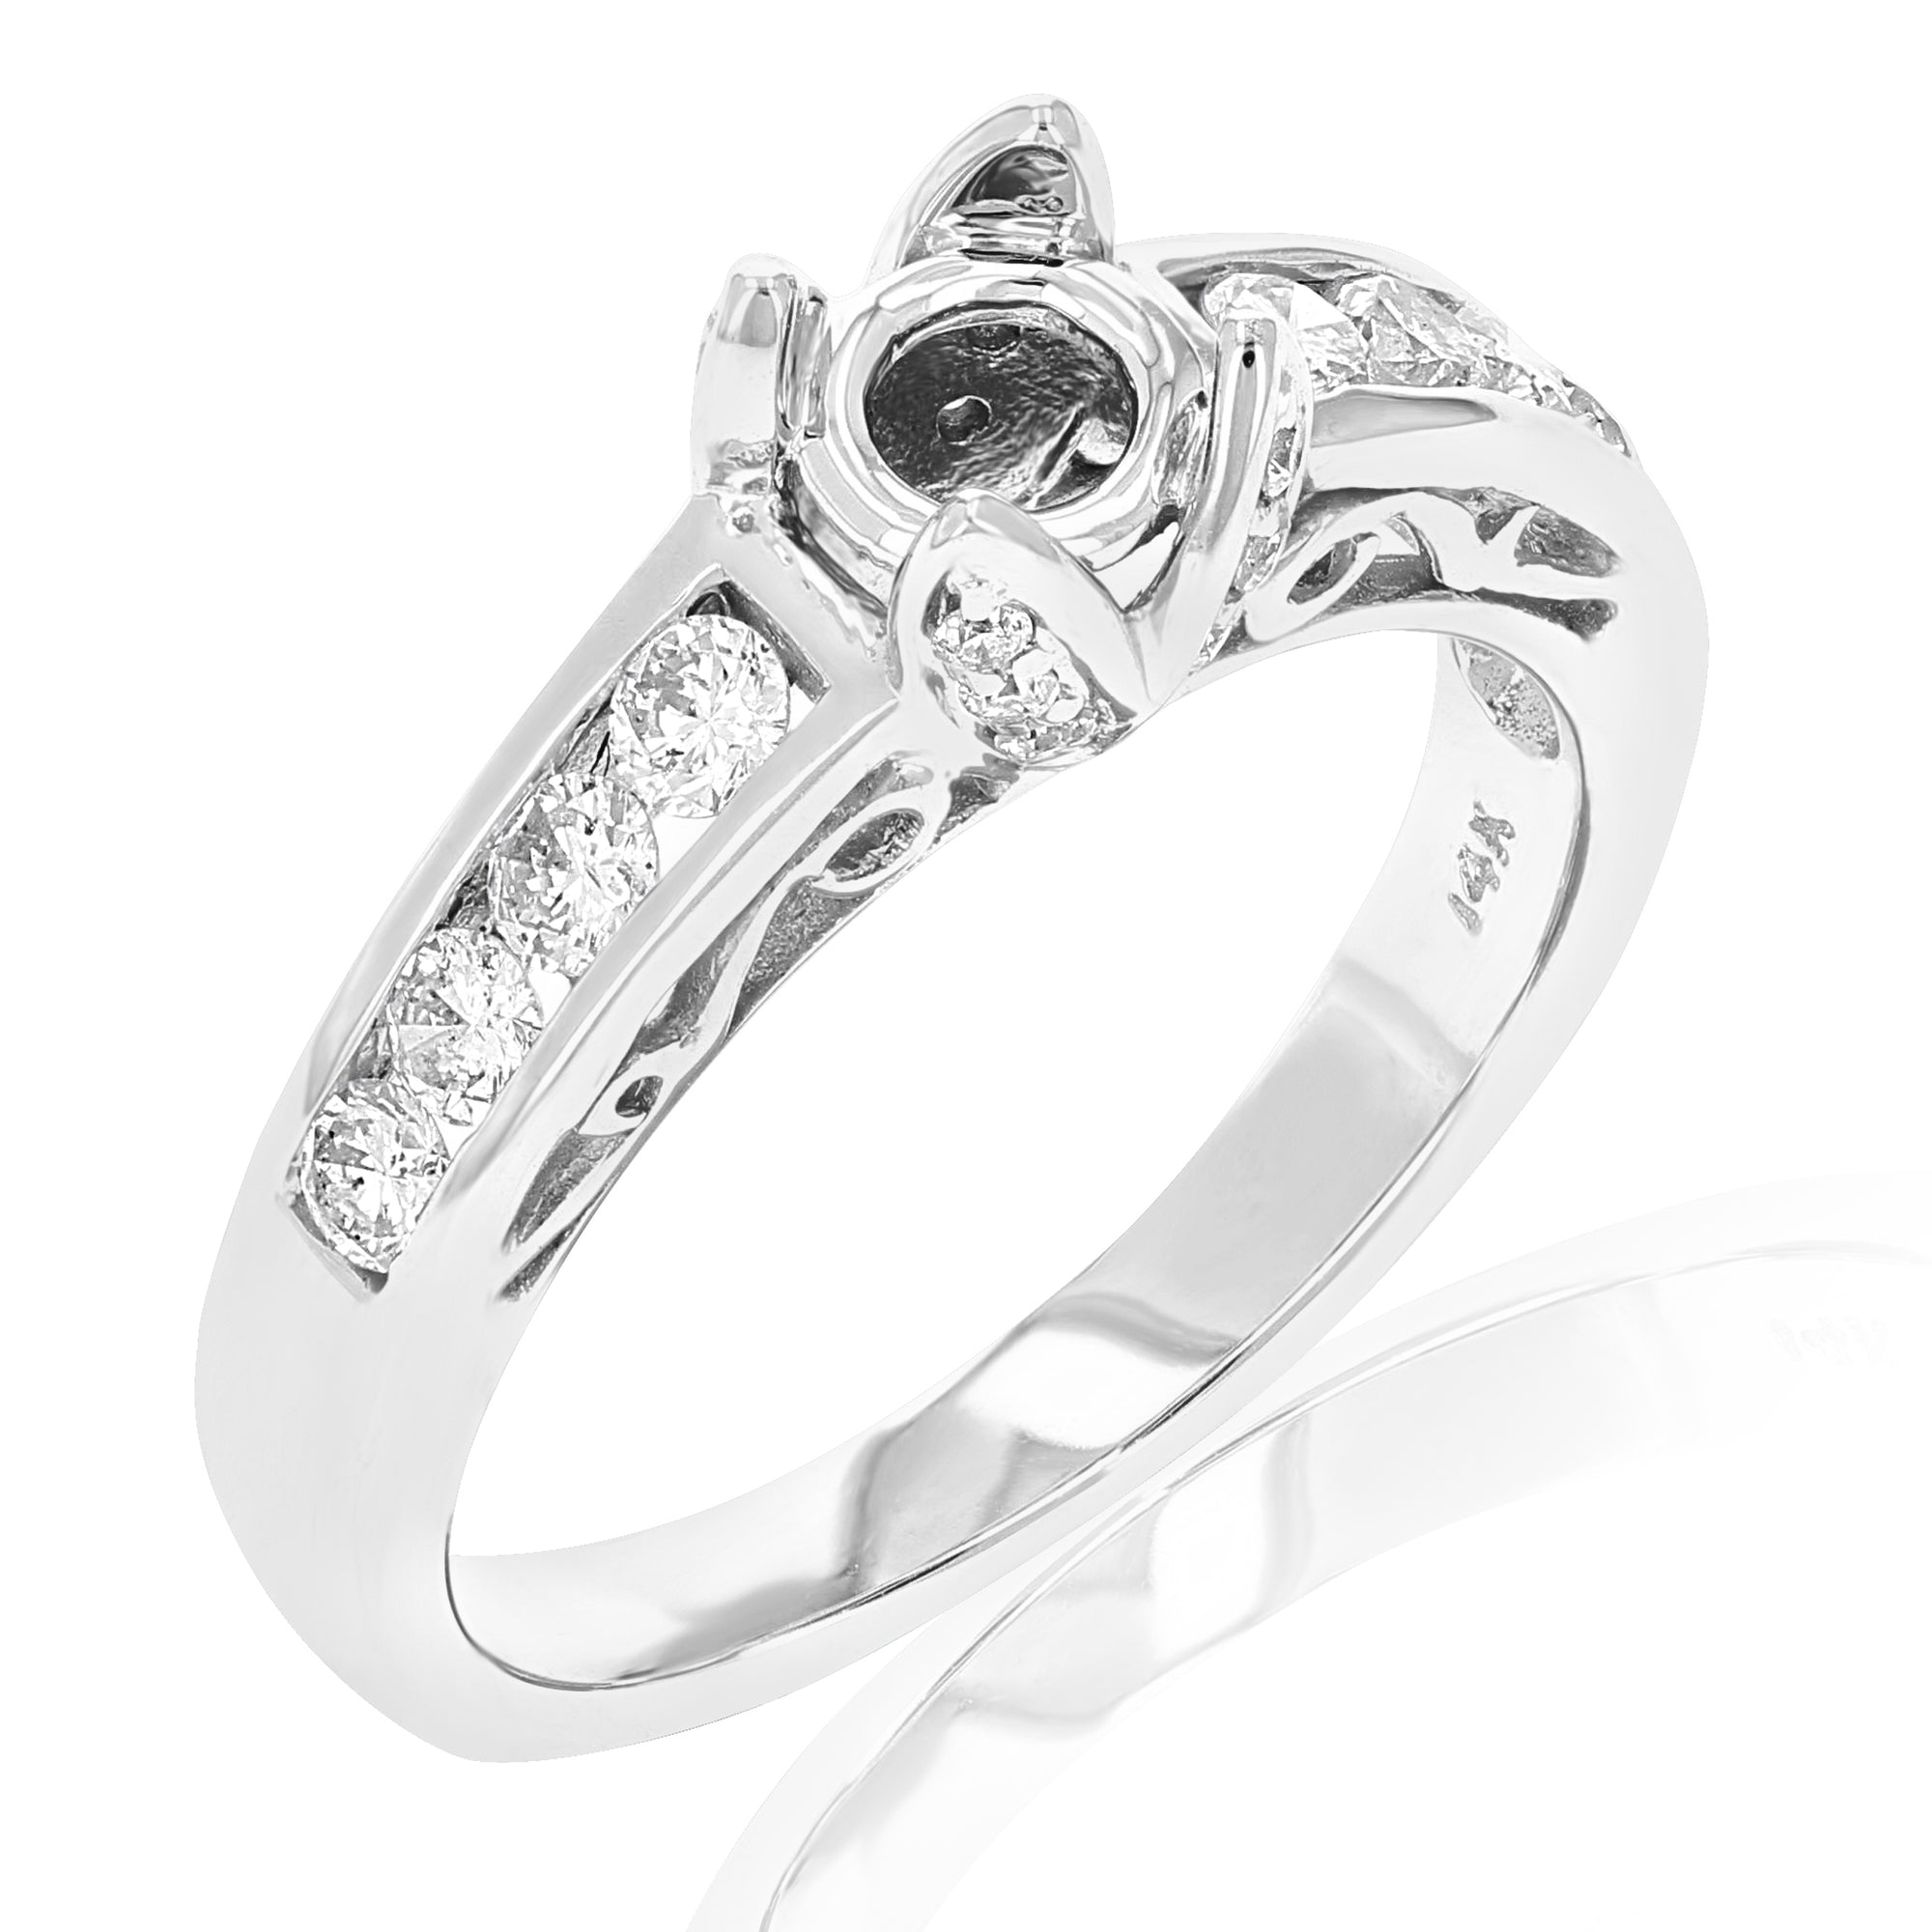 0.60 cttw Semi Mount Diamond Wedding Bridal Set 14K White Gold Round Size 7